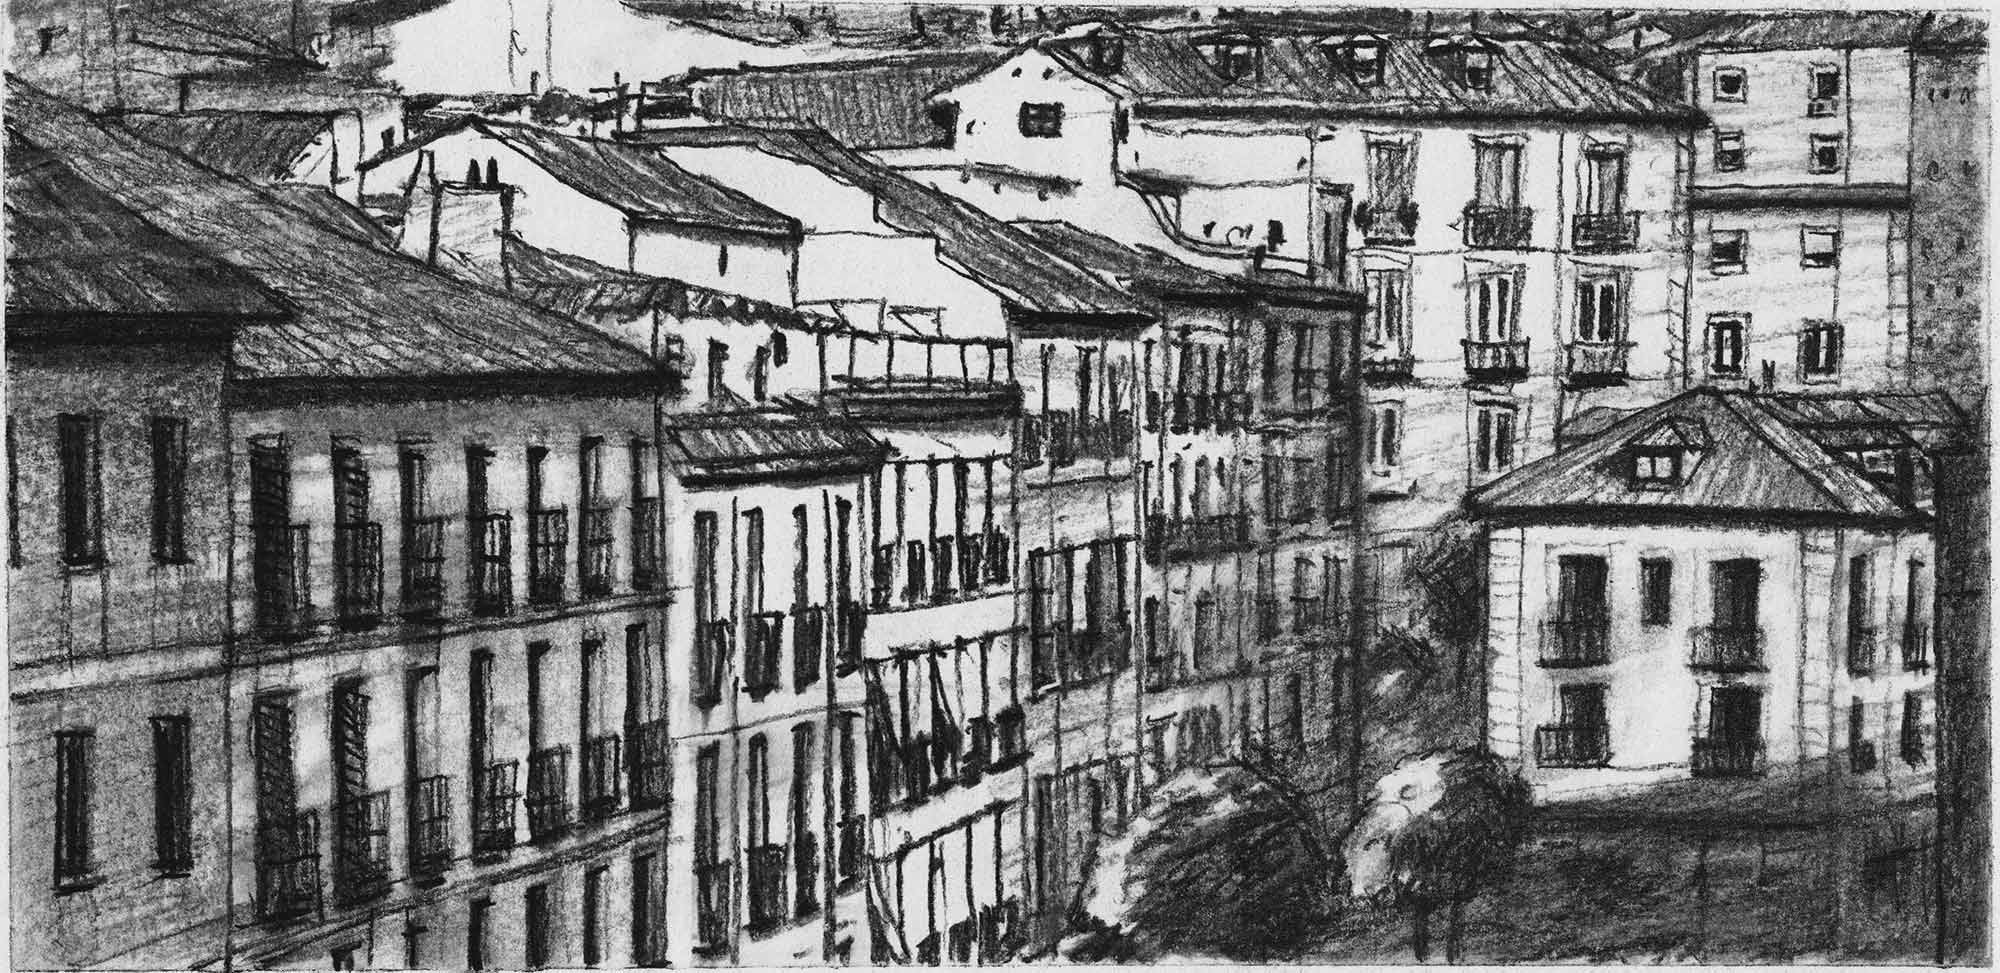 Vista aérea de la calle Segovia. Charcoal on paper, by Mario Jodra.